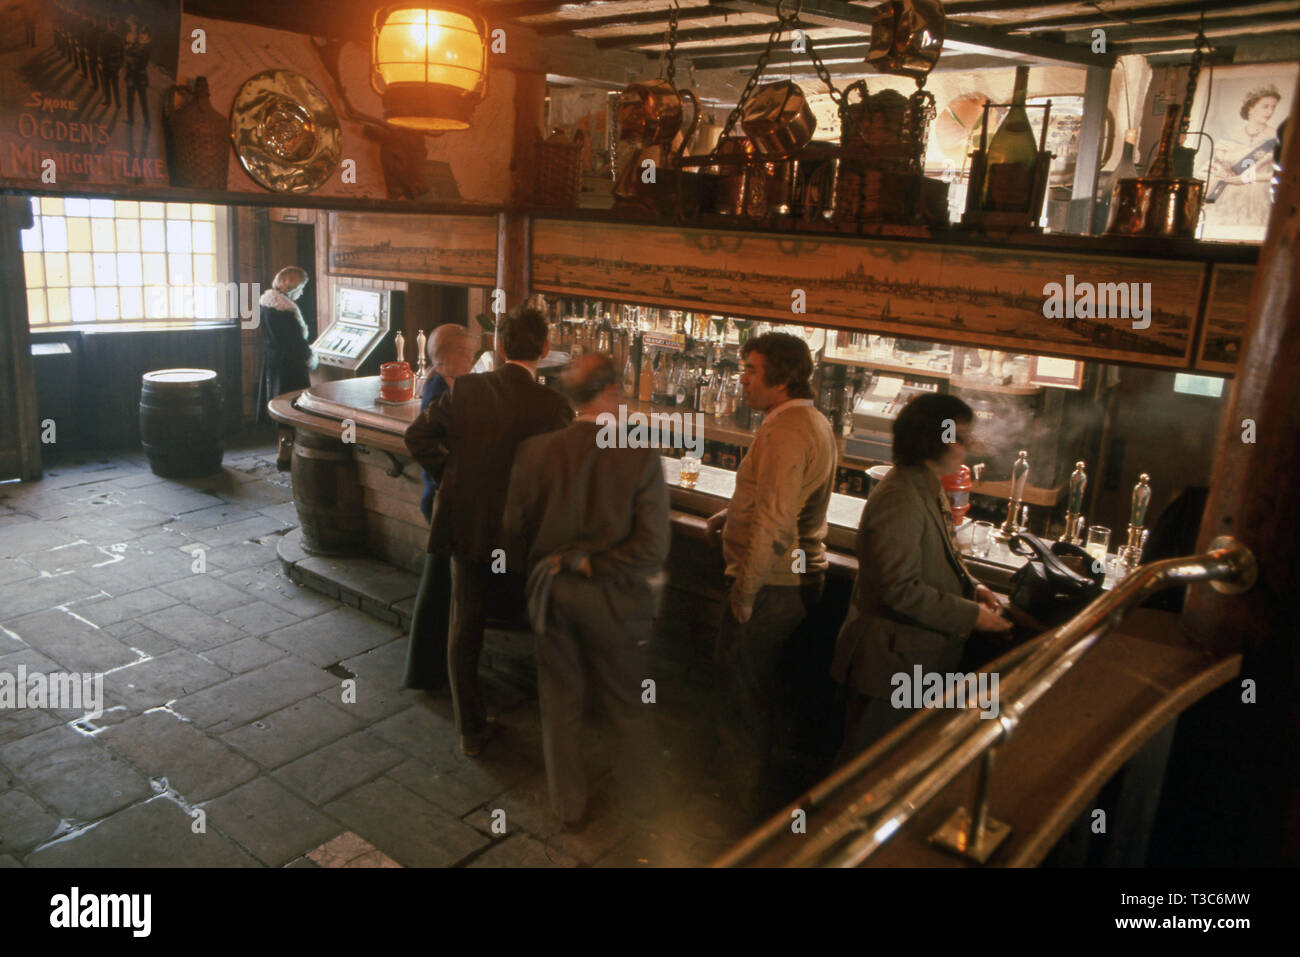 Pub tradicional interior con hombres bebiendo en el bar Foto de stock